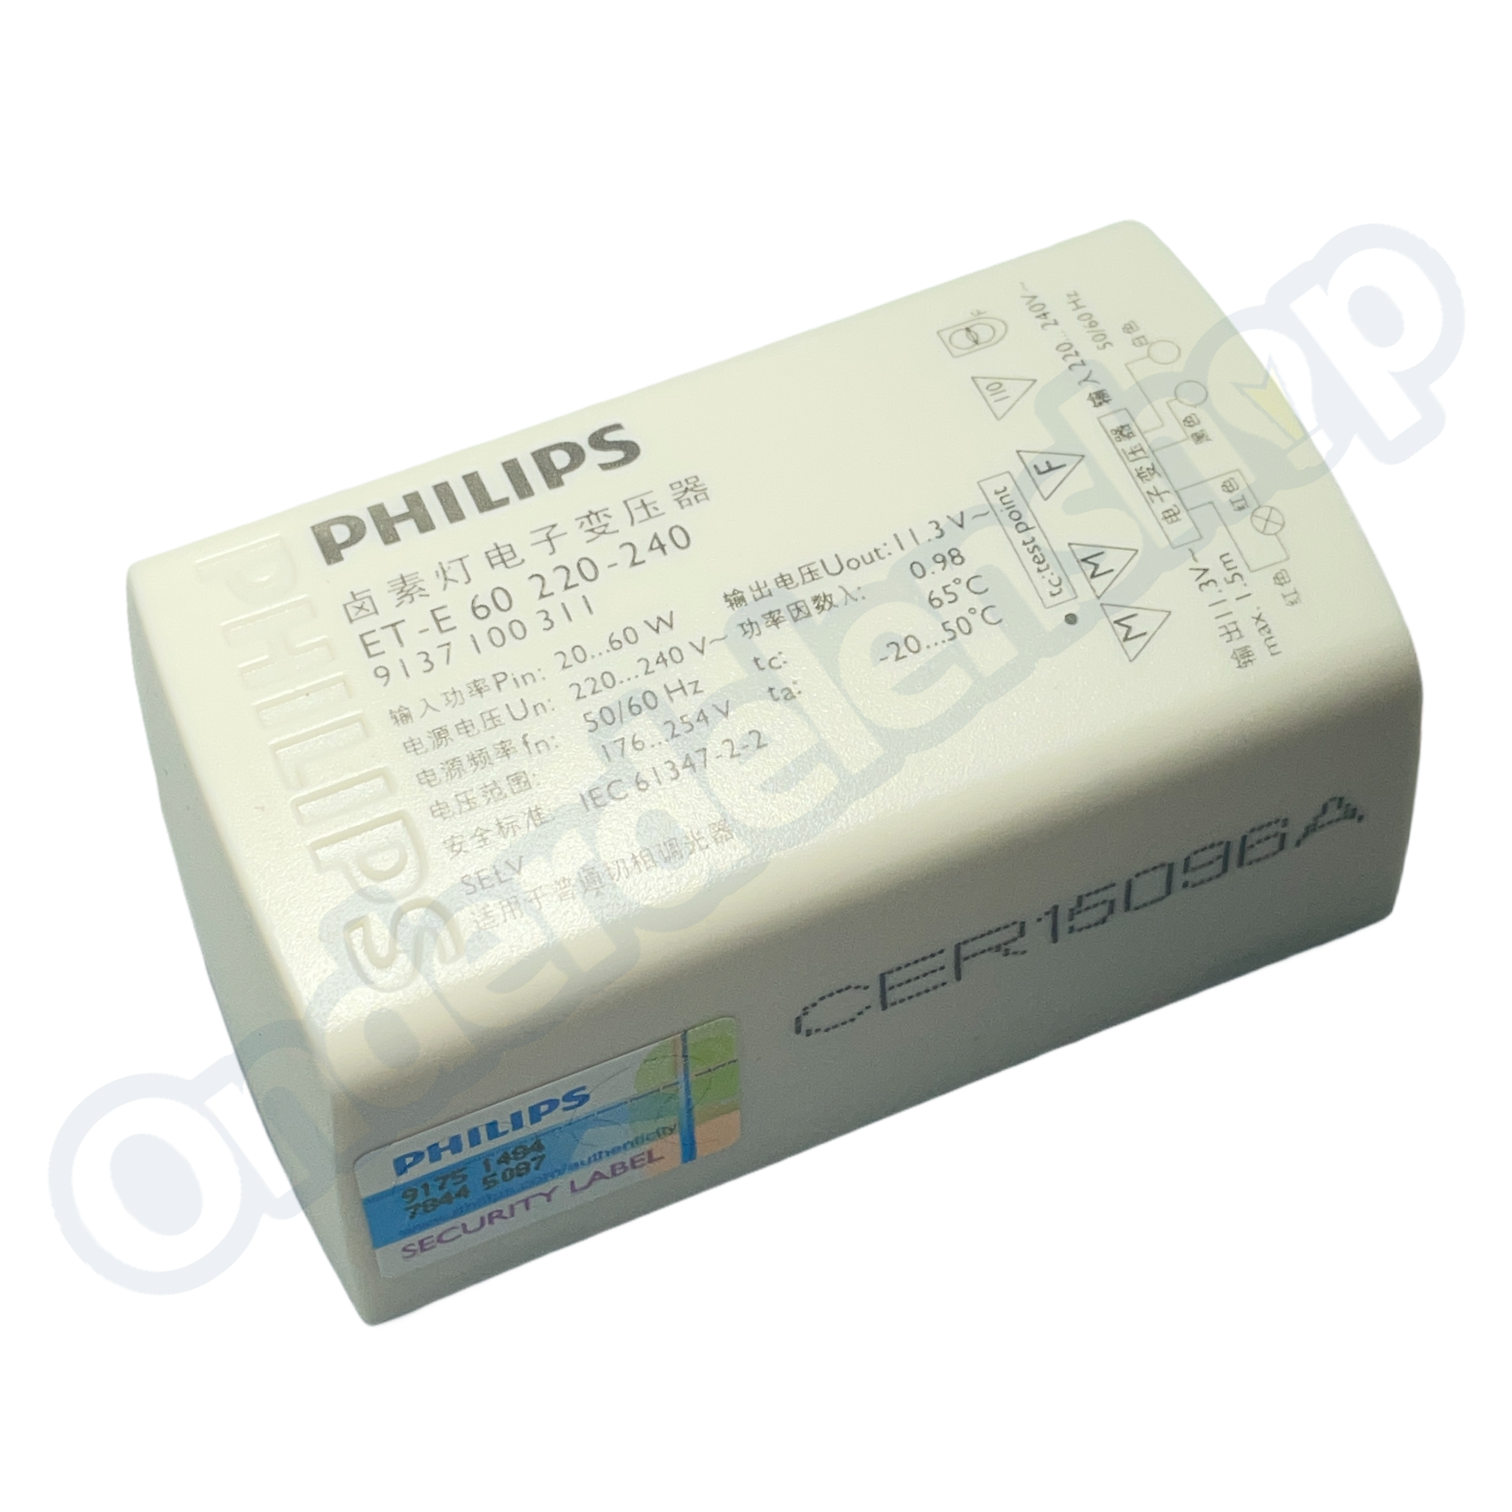 Uitpakken microfoon erfgoed Halogeen Trafo Philips E-Et60 20-60W 12V Dimbaar 76X38X31Mm - Onderdelenshop